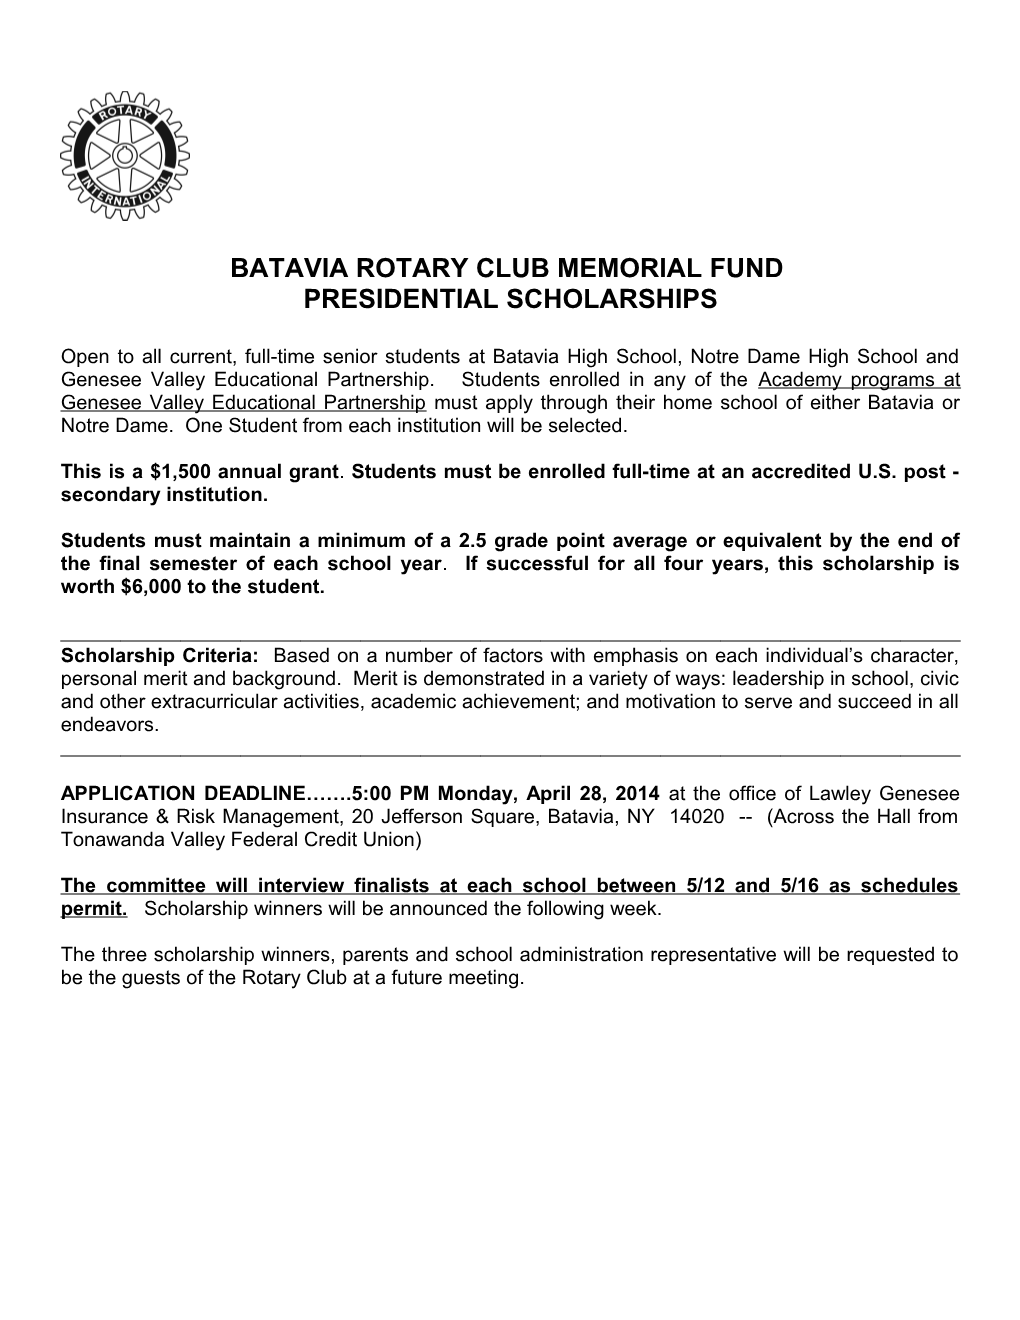 Batavia Rotary Club Memorial Fund